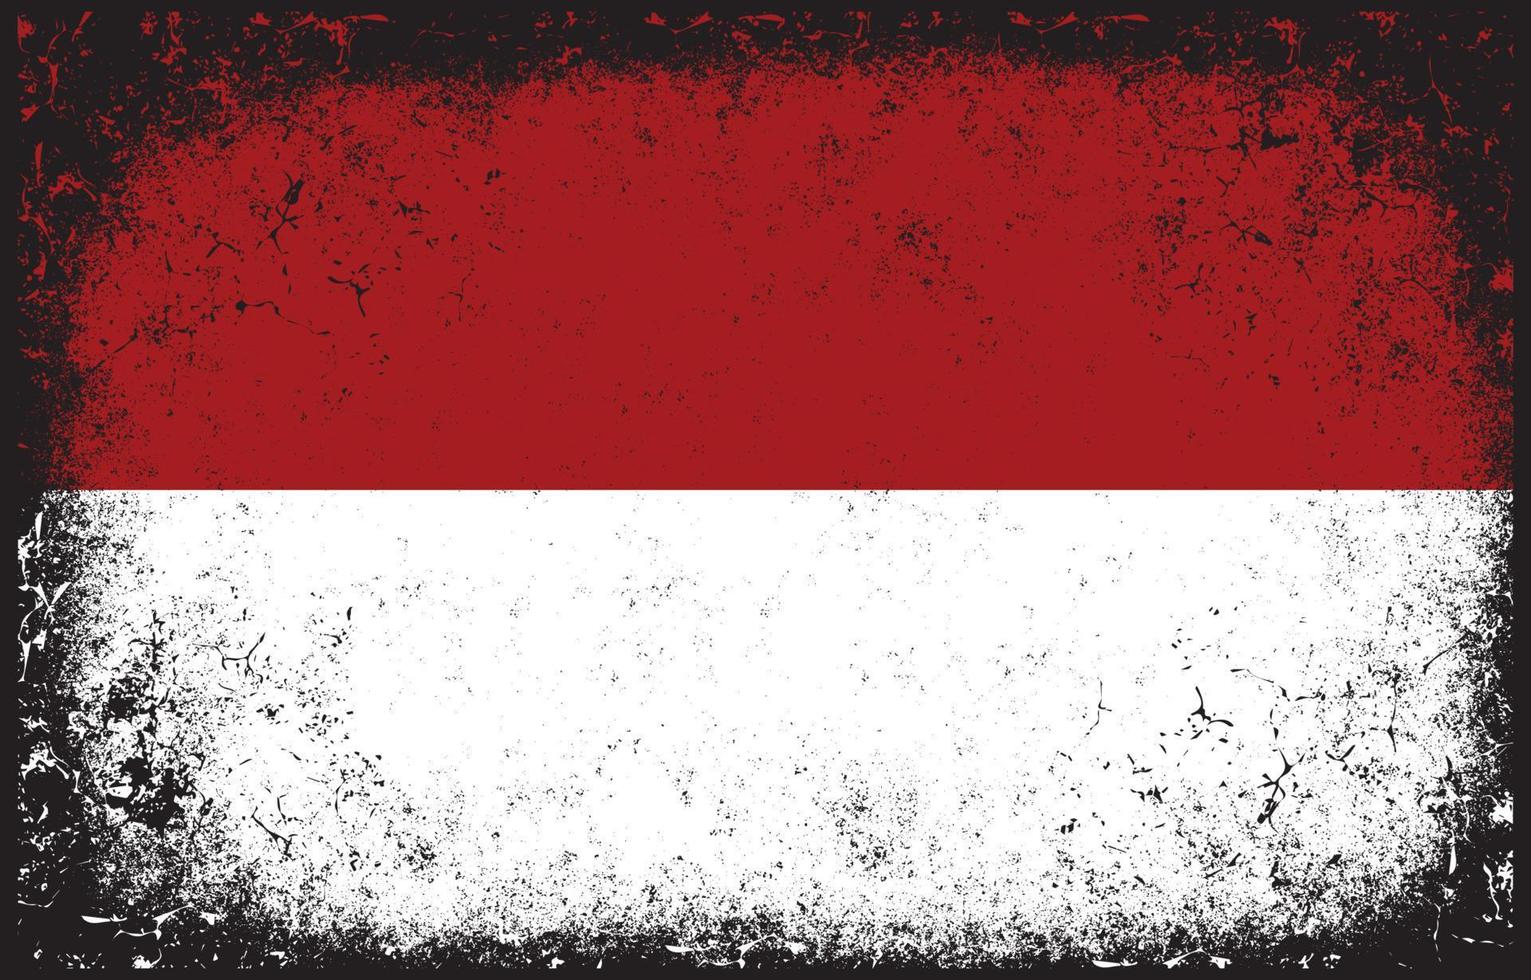 viejo sucio grunge vintage indonesia bandera nacional ilustración vector